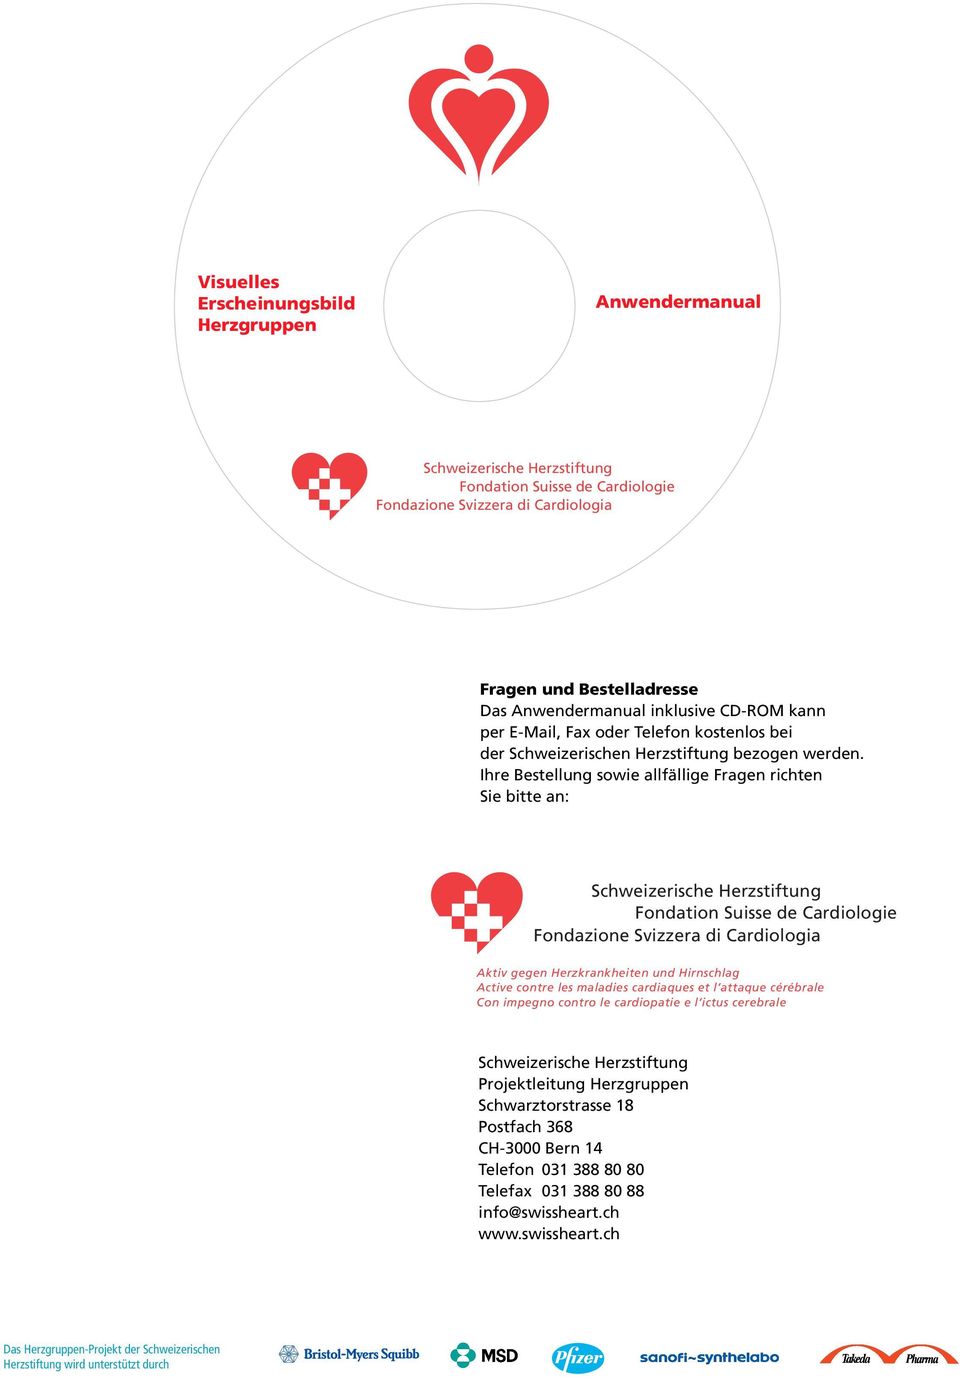 Ihre Bestellung sowie allfällige Fragen richten Sie bitte an: Fondation Suisse de Cardiologie Fondazione Svizzera di Cardiologia Aktiv gegen Herzkrankheiten und Hirnschlag Active contre les